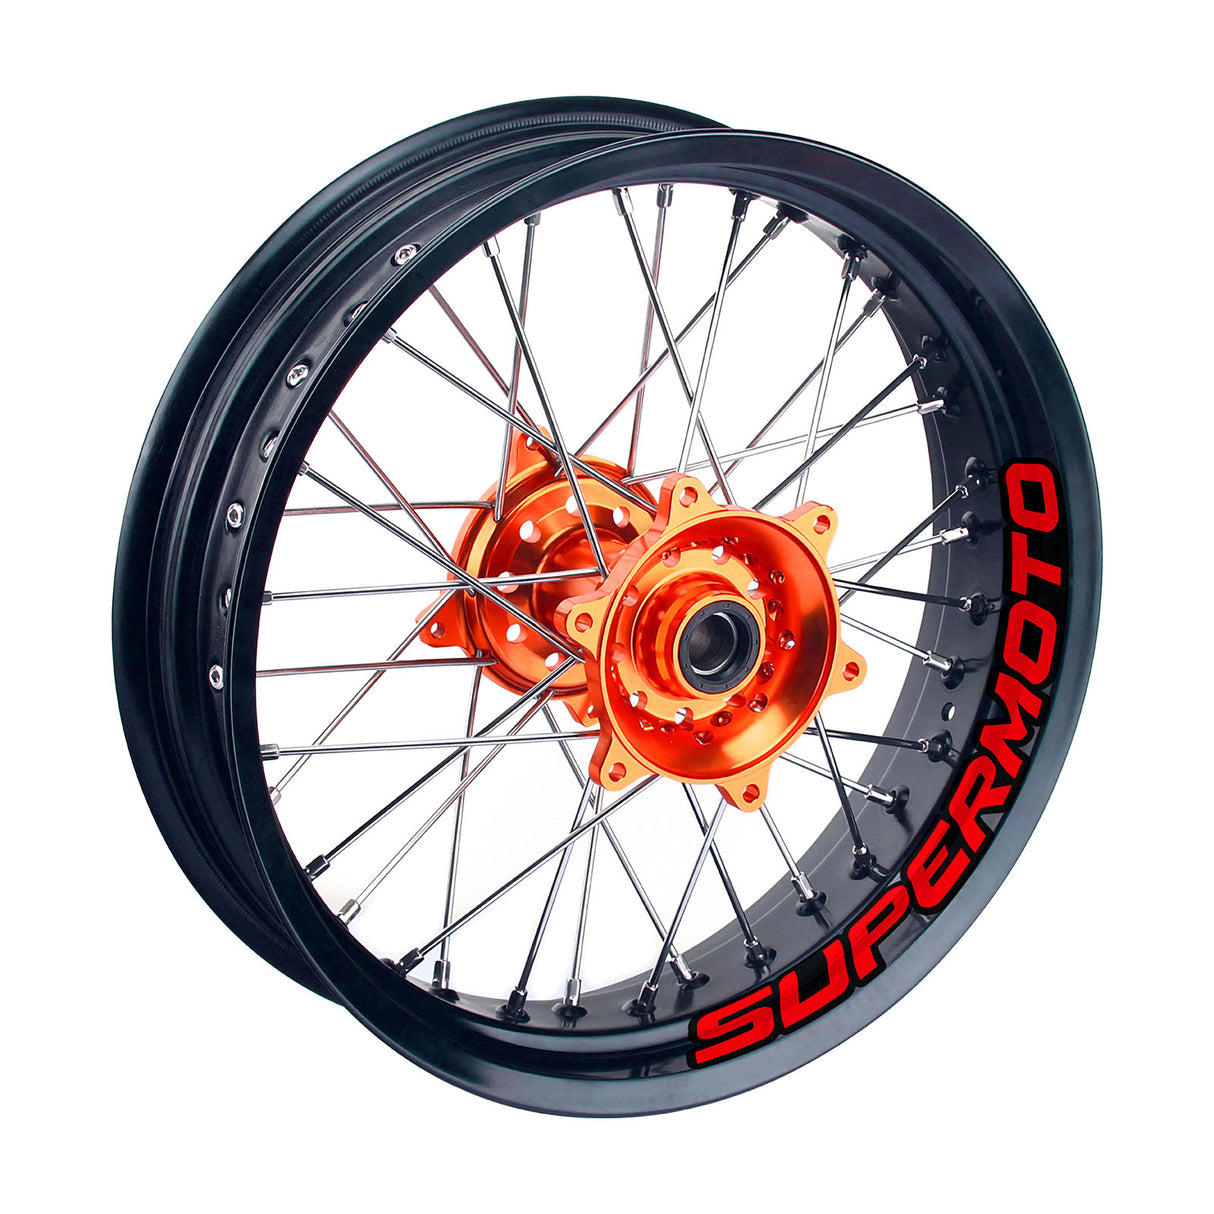 17 inch Rim Wheel Stickers SUPERMOTO Dirt Bike Inner Rim Decal | For Suzuki DR-Z400SM Honda CRF150 - StickerBao Wheel Sticker Store